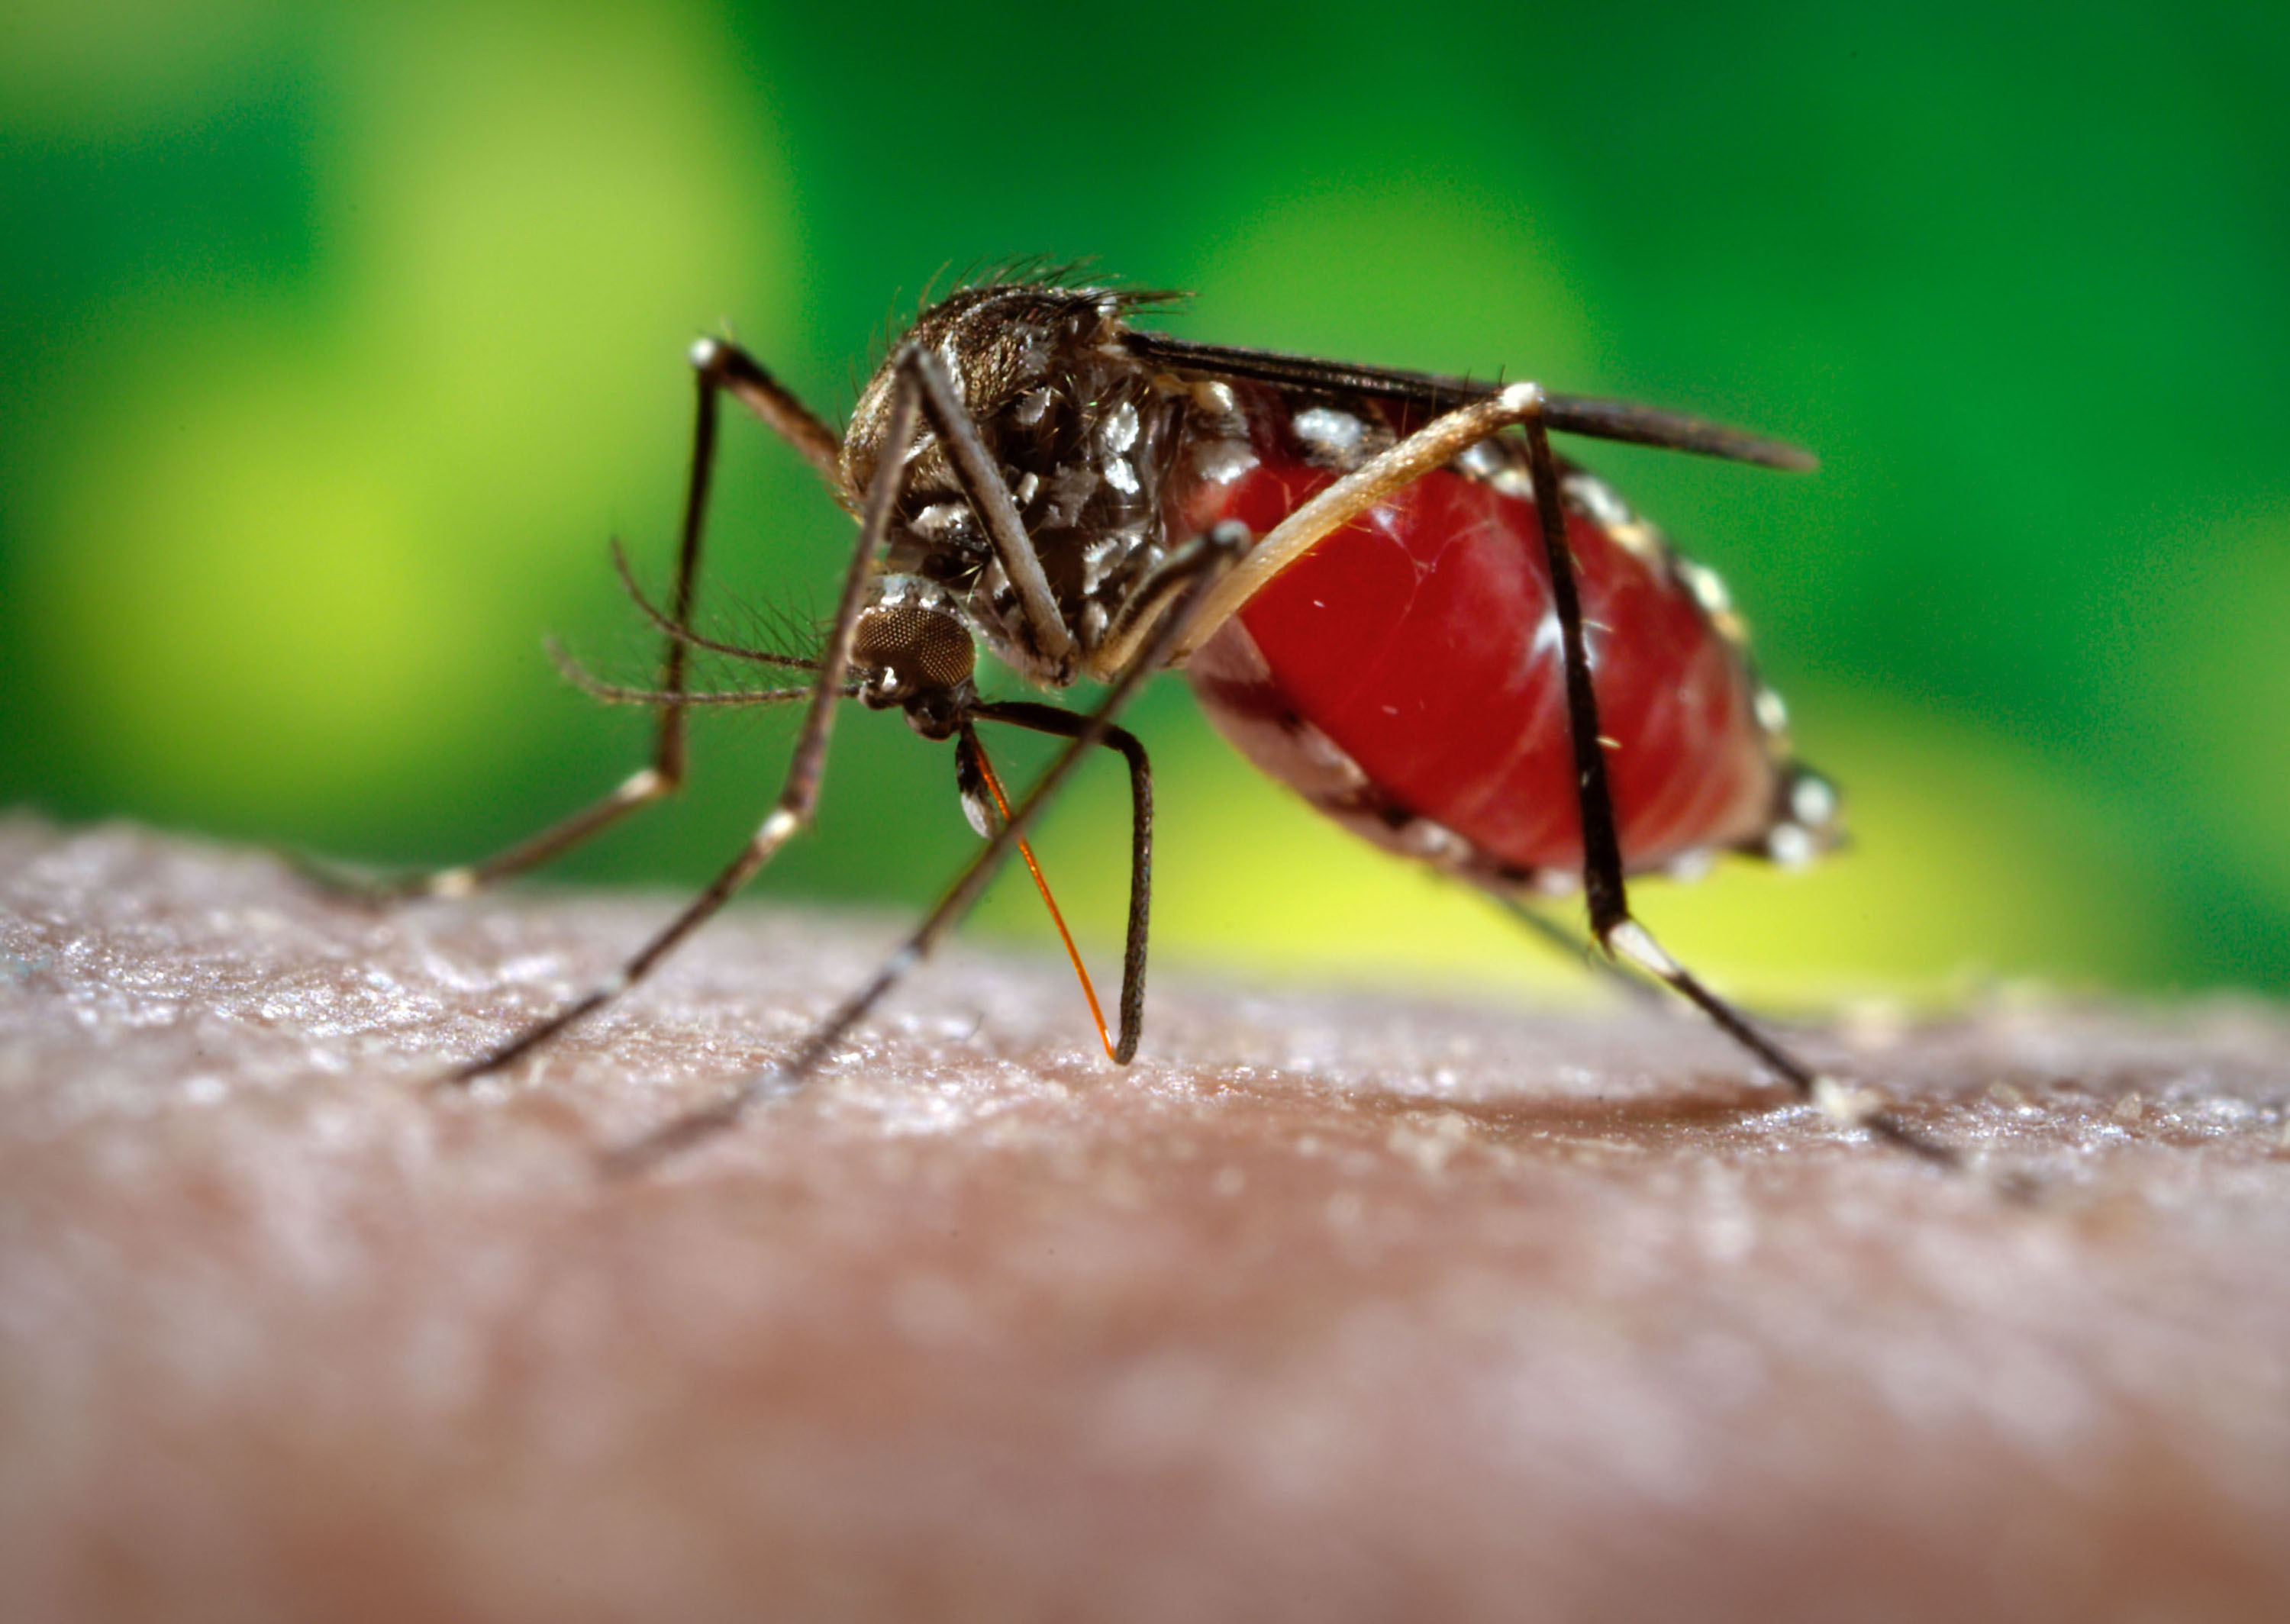 борьба с комарами